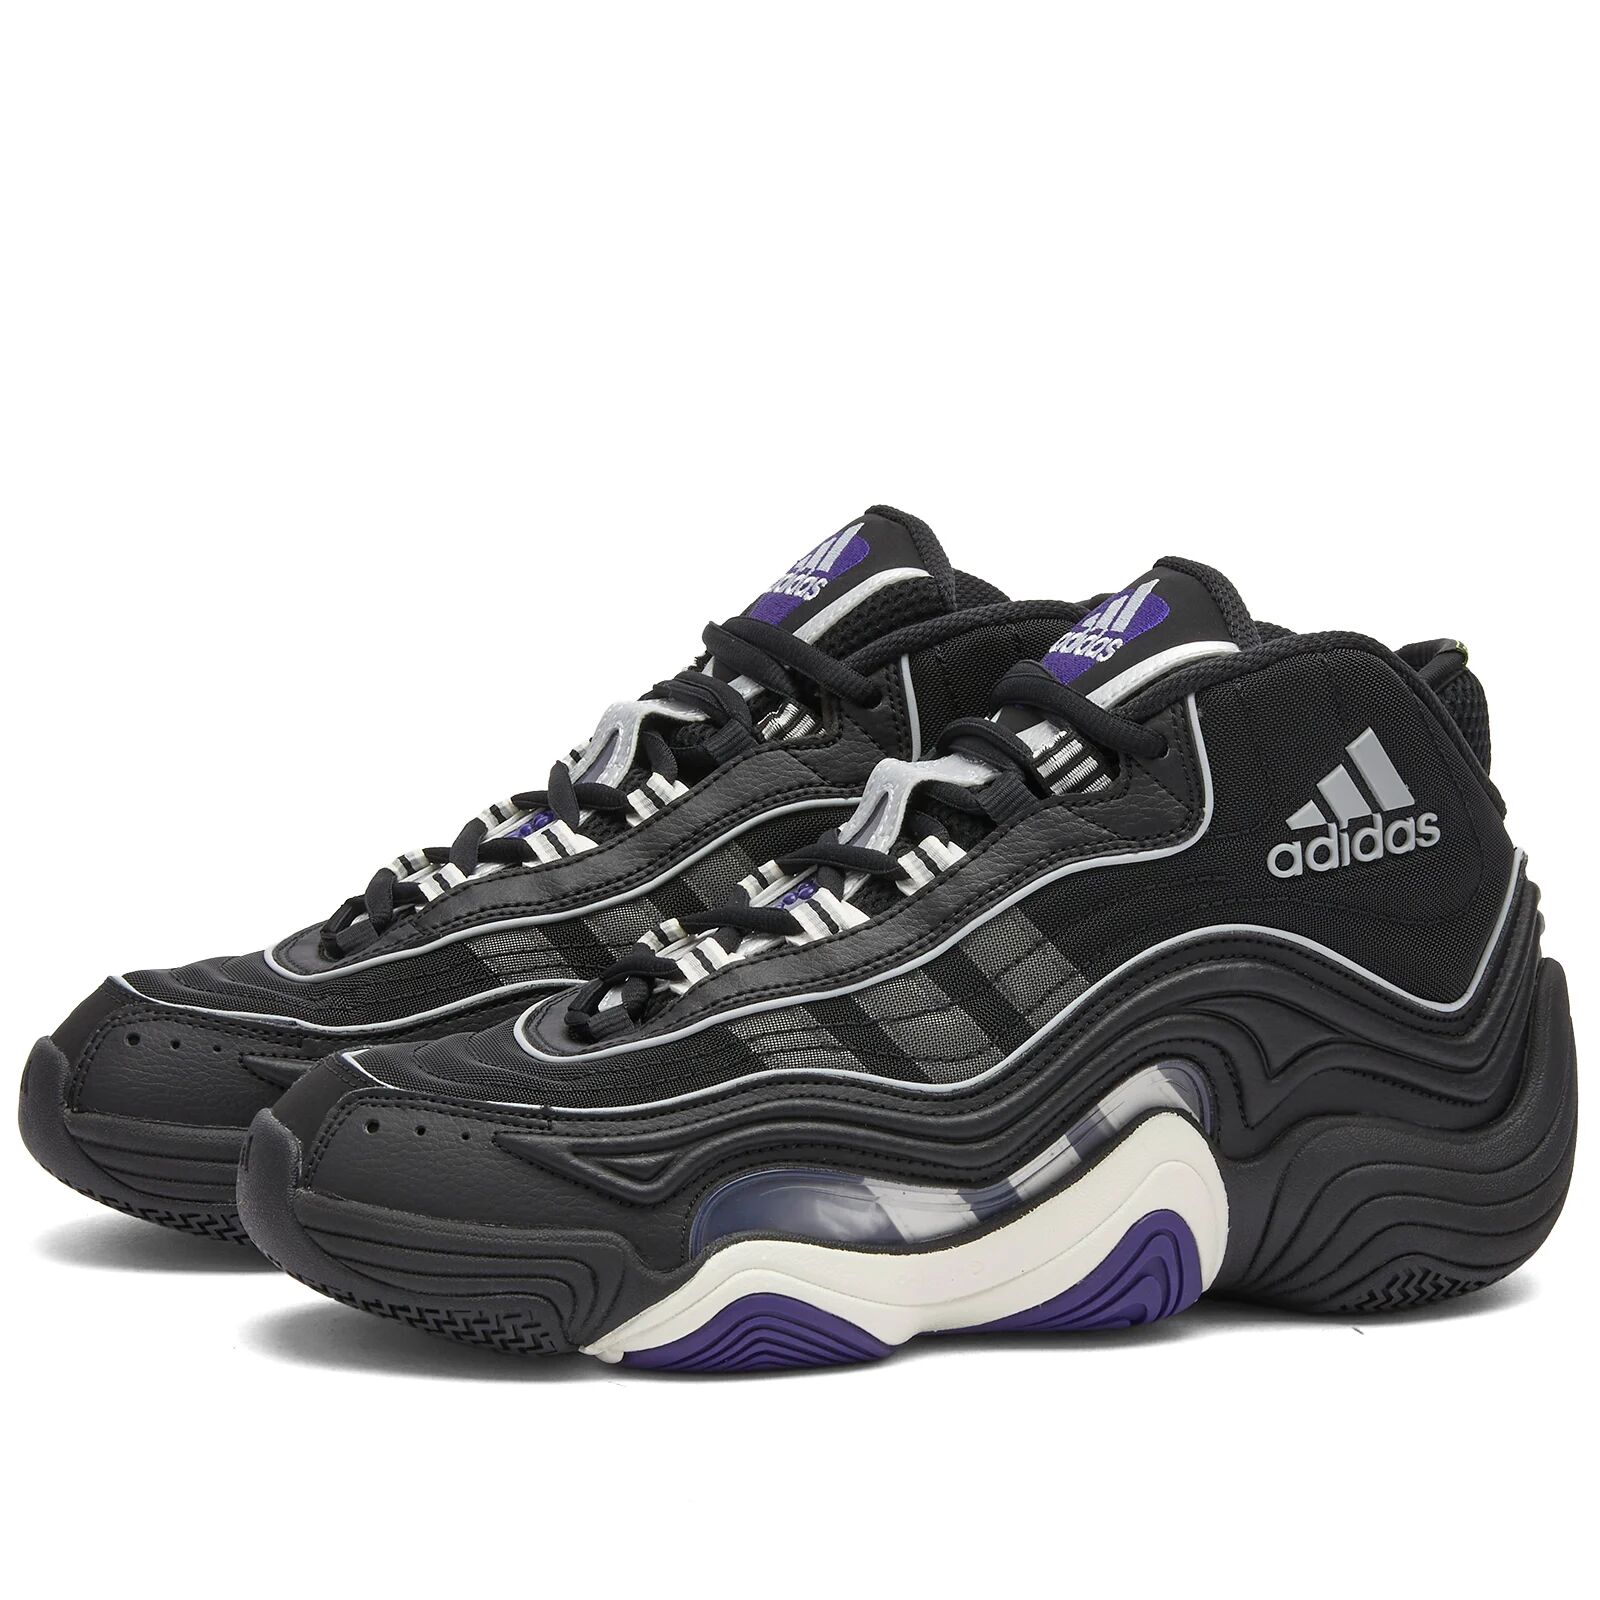 Adidas Men's CRAZY 98 Sneakers in Core Black/Core White/Collegiate Purple, Size UK 7.5